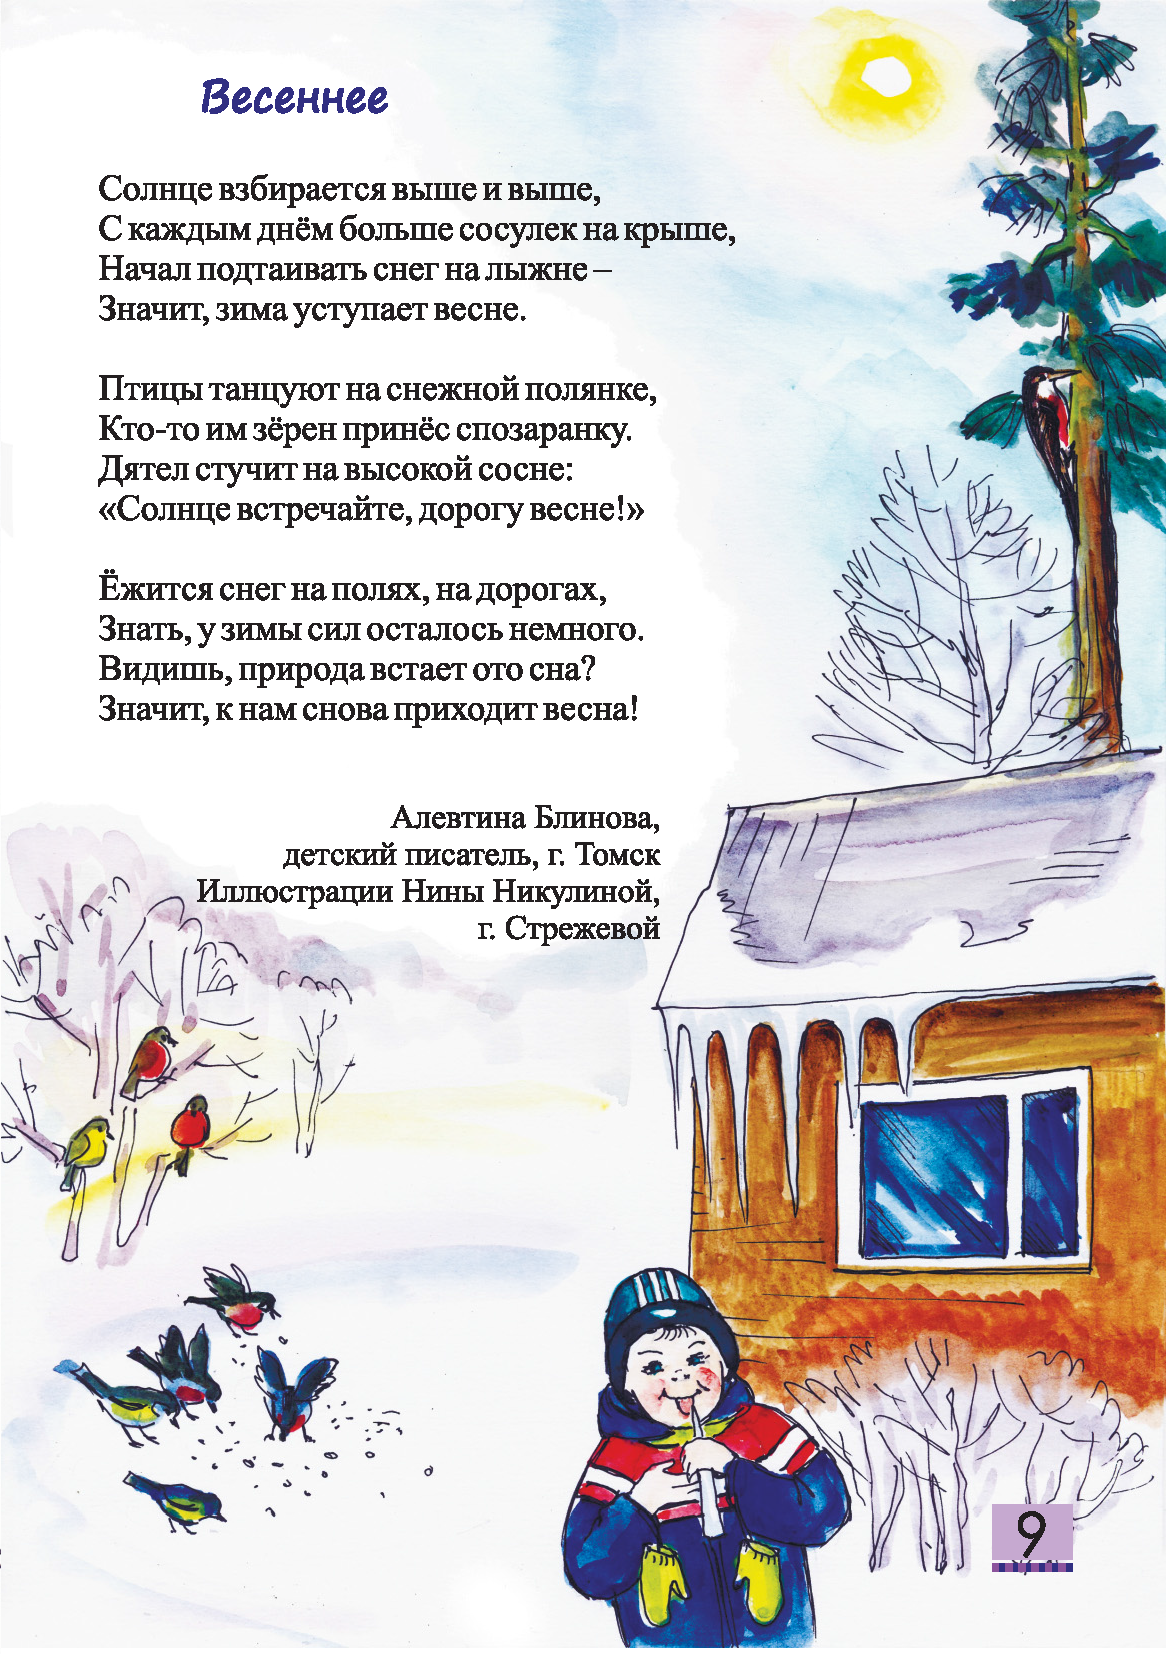 Детский журнал Енот - 2020.03 Страница 09